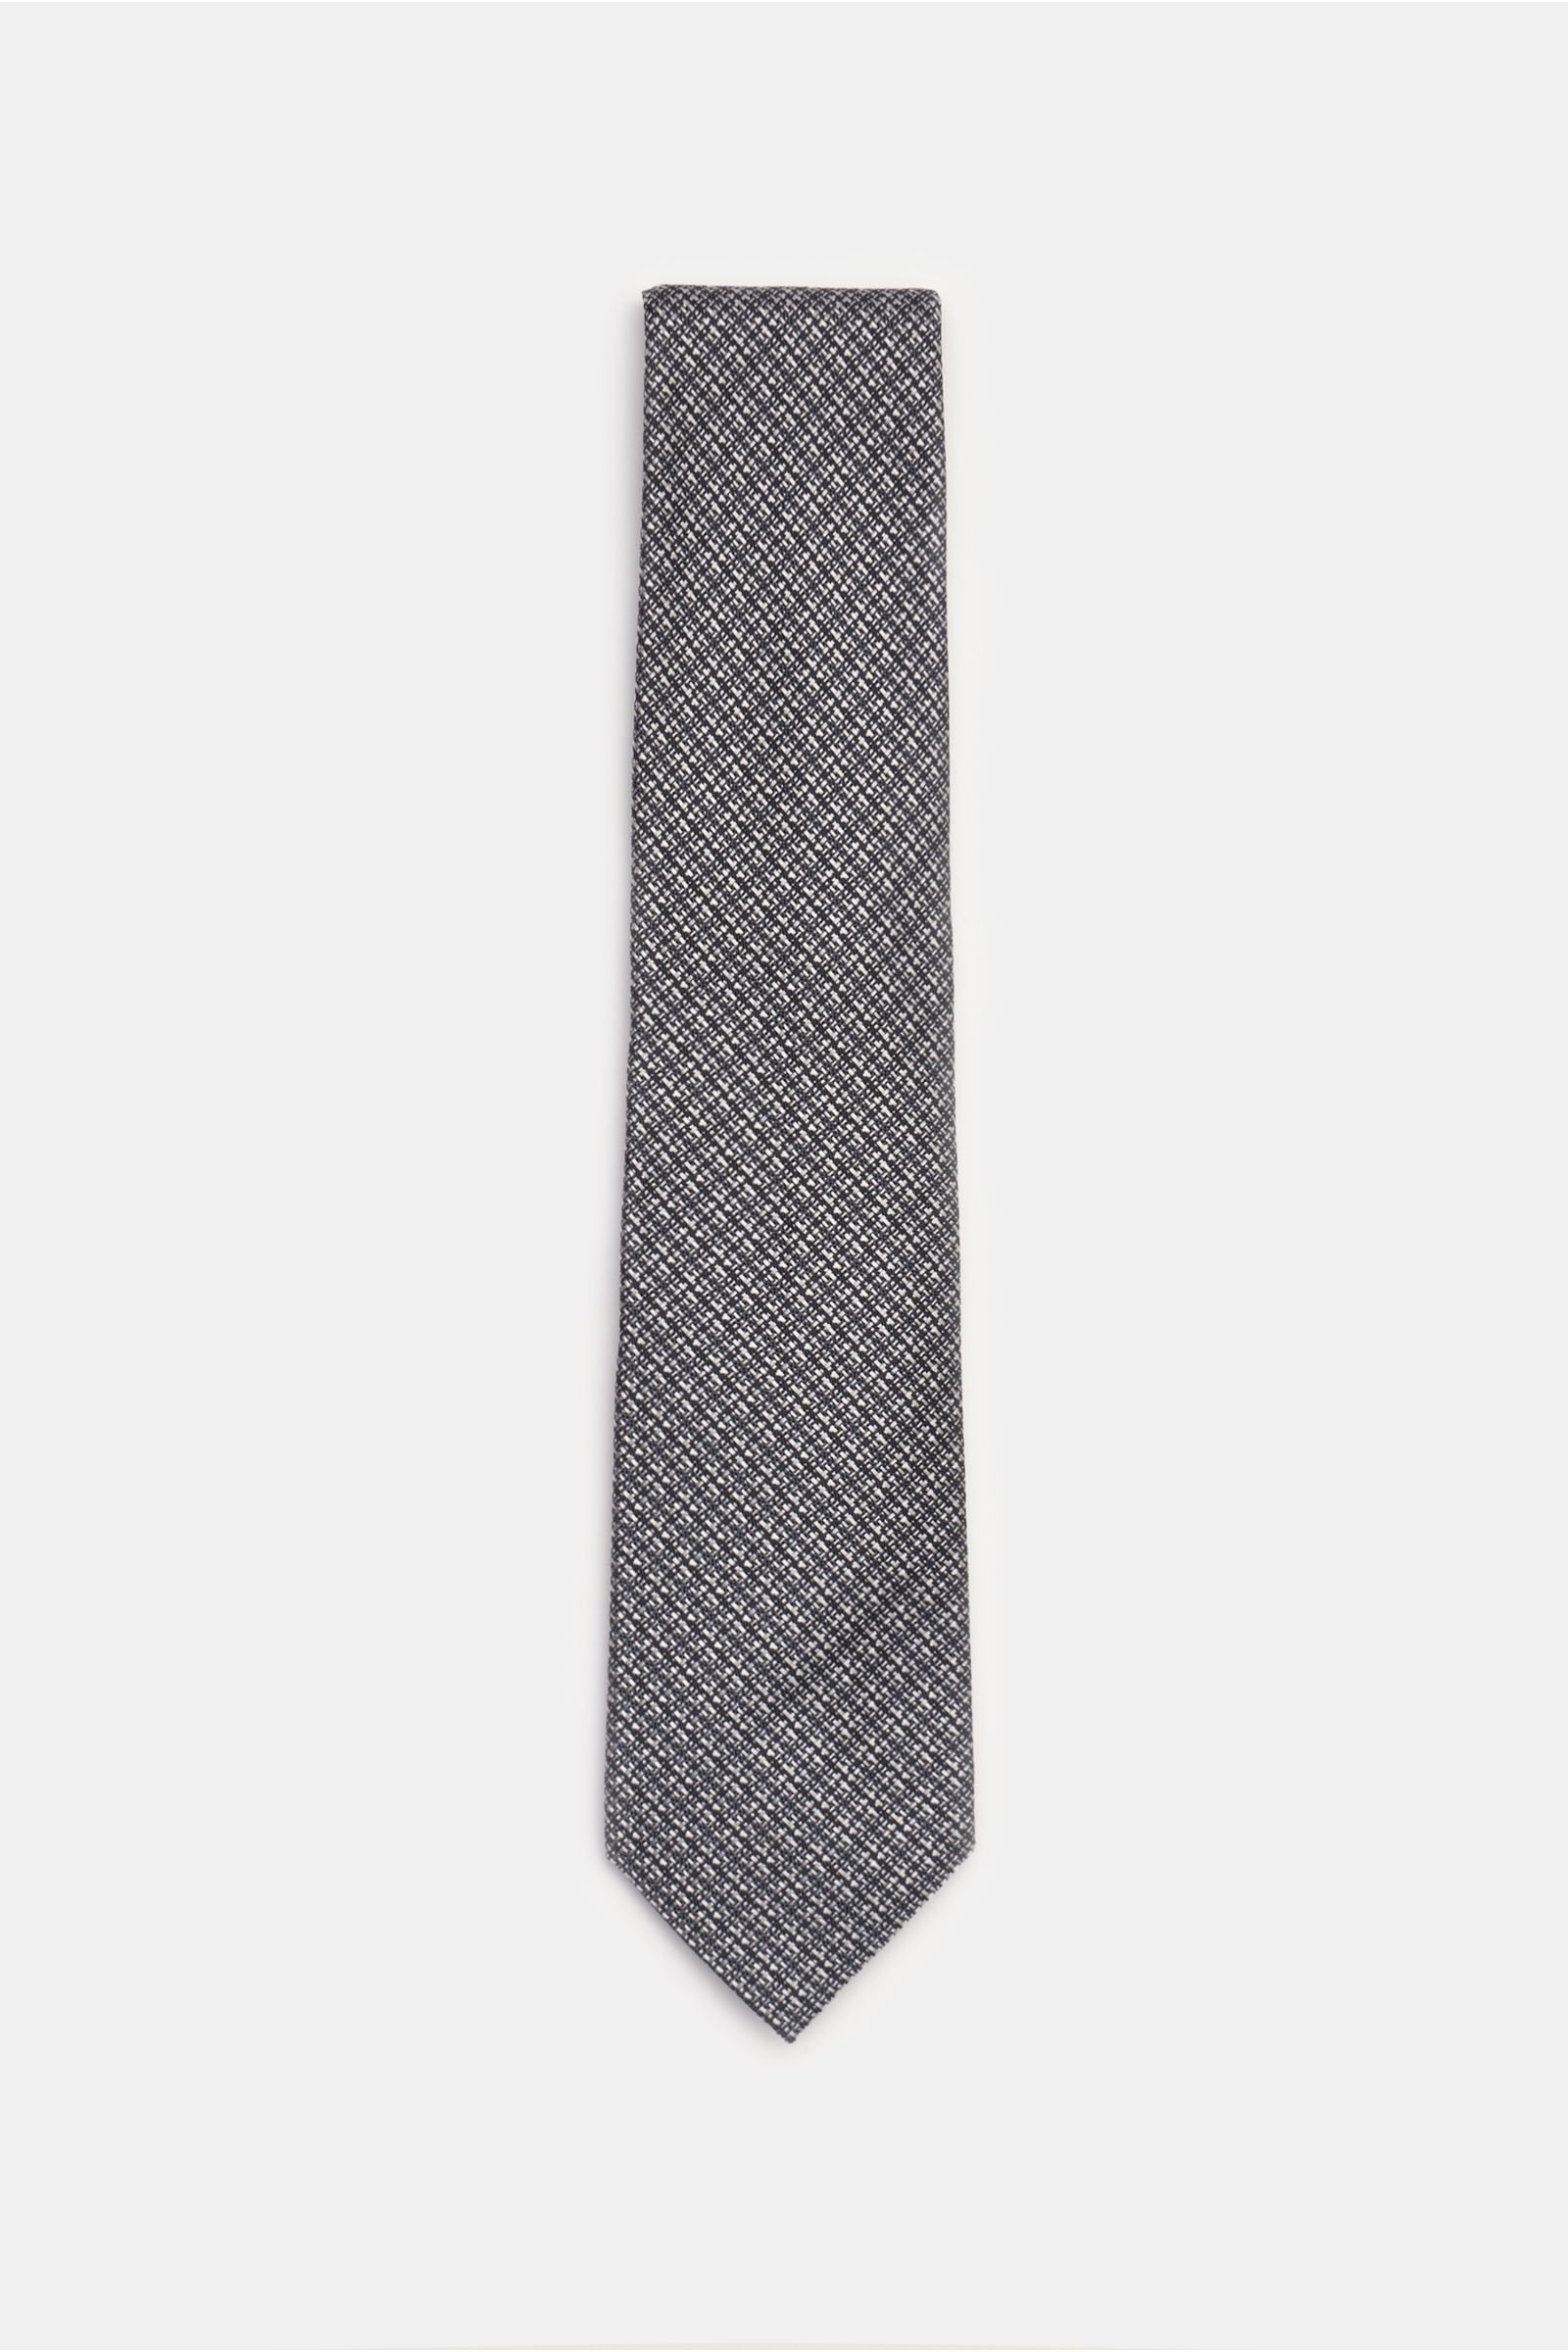 Silk tie silver-grey/black checked